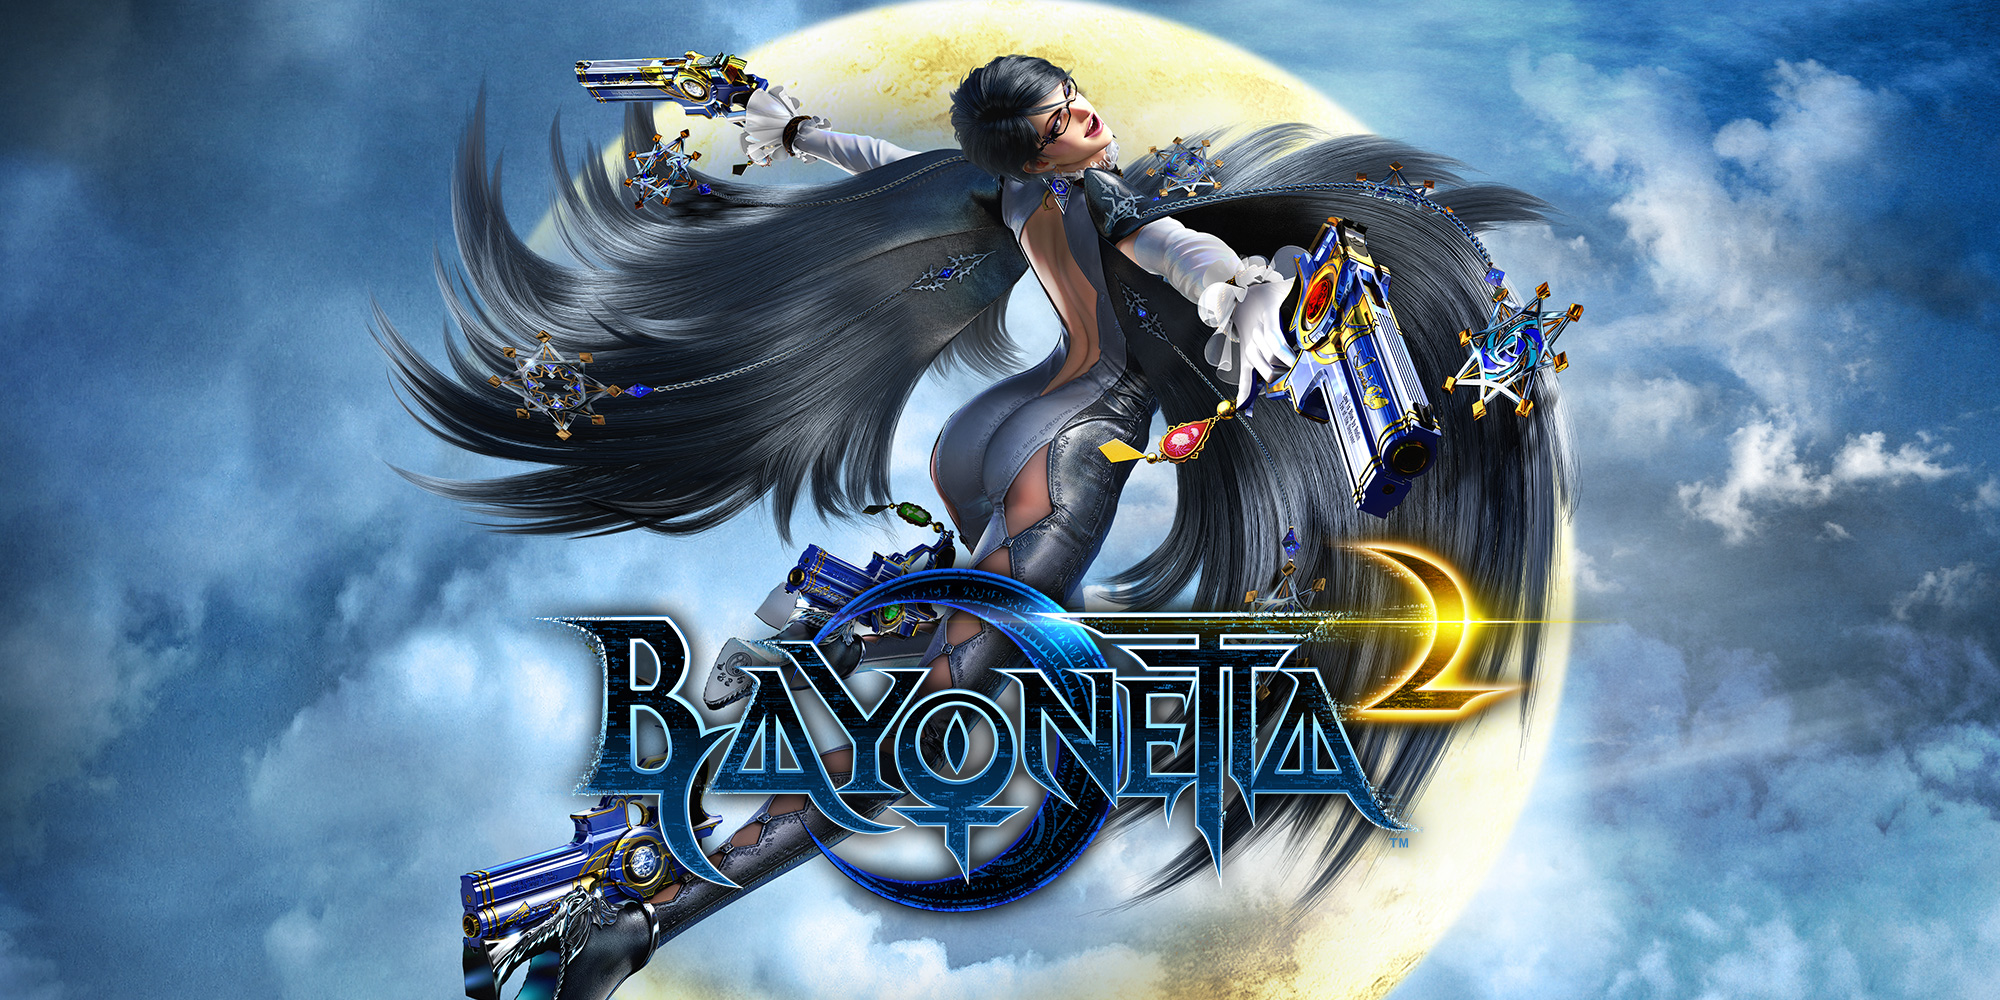 Bayonetta 2 + Bayonetta 1 - Switch - Nintendo - Jogos de Ação